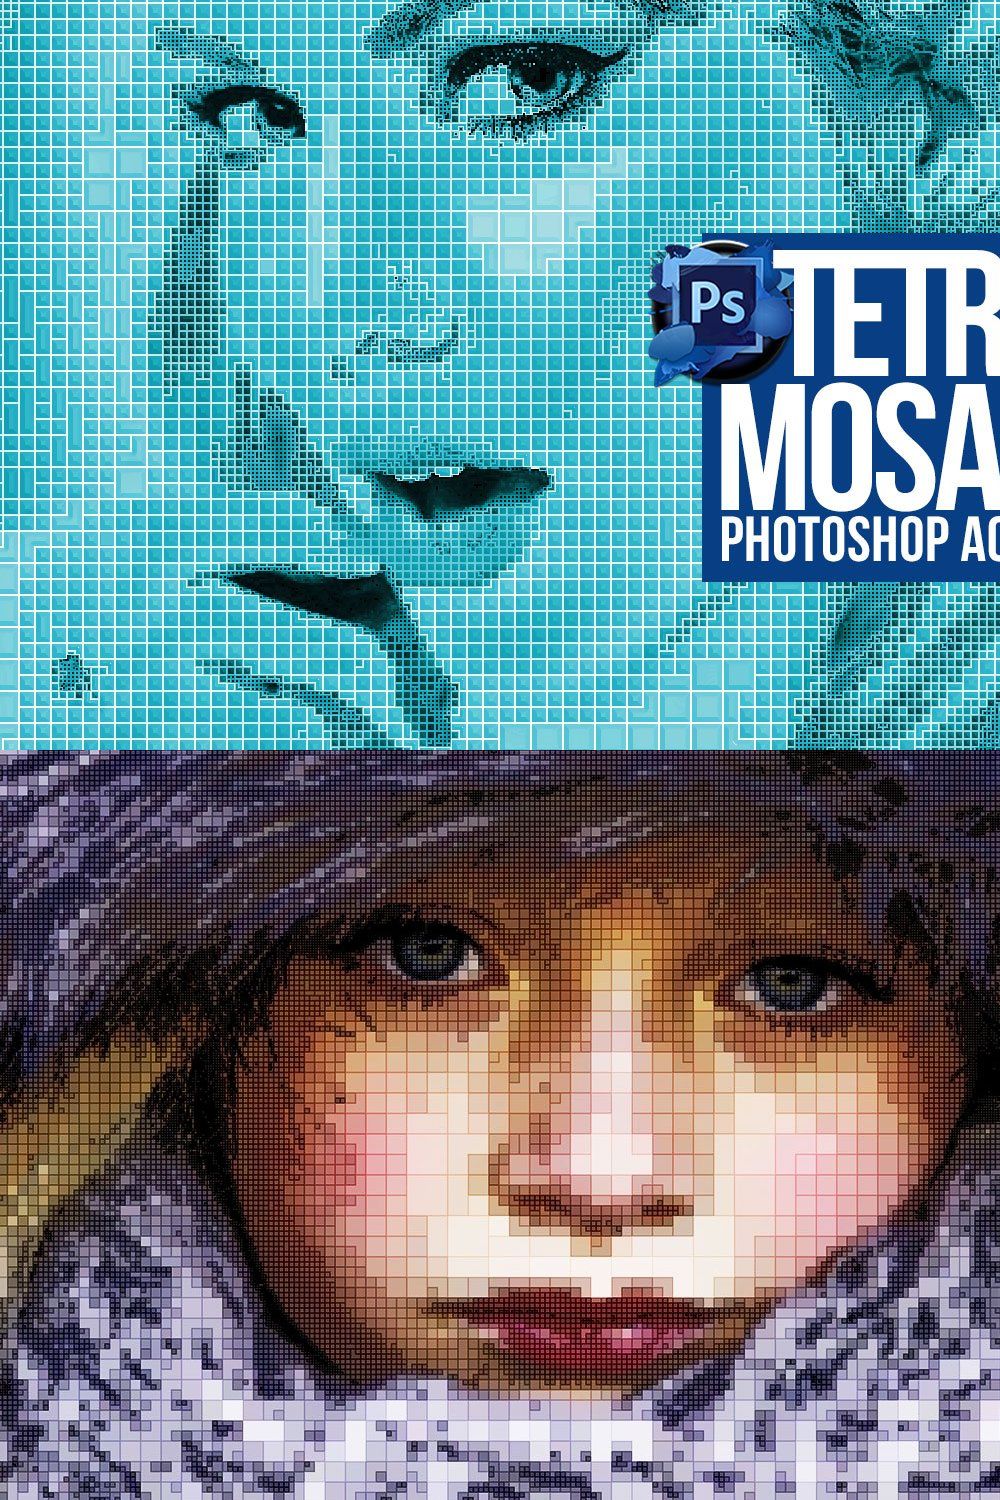 Tetris Mosaic Photoshop Action pinterest preview image.